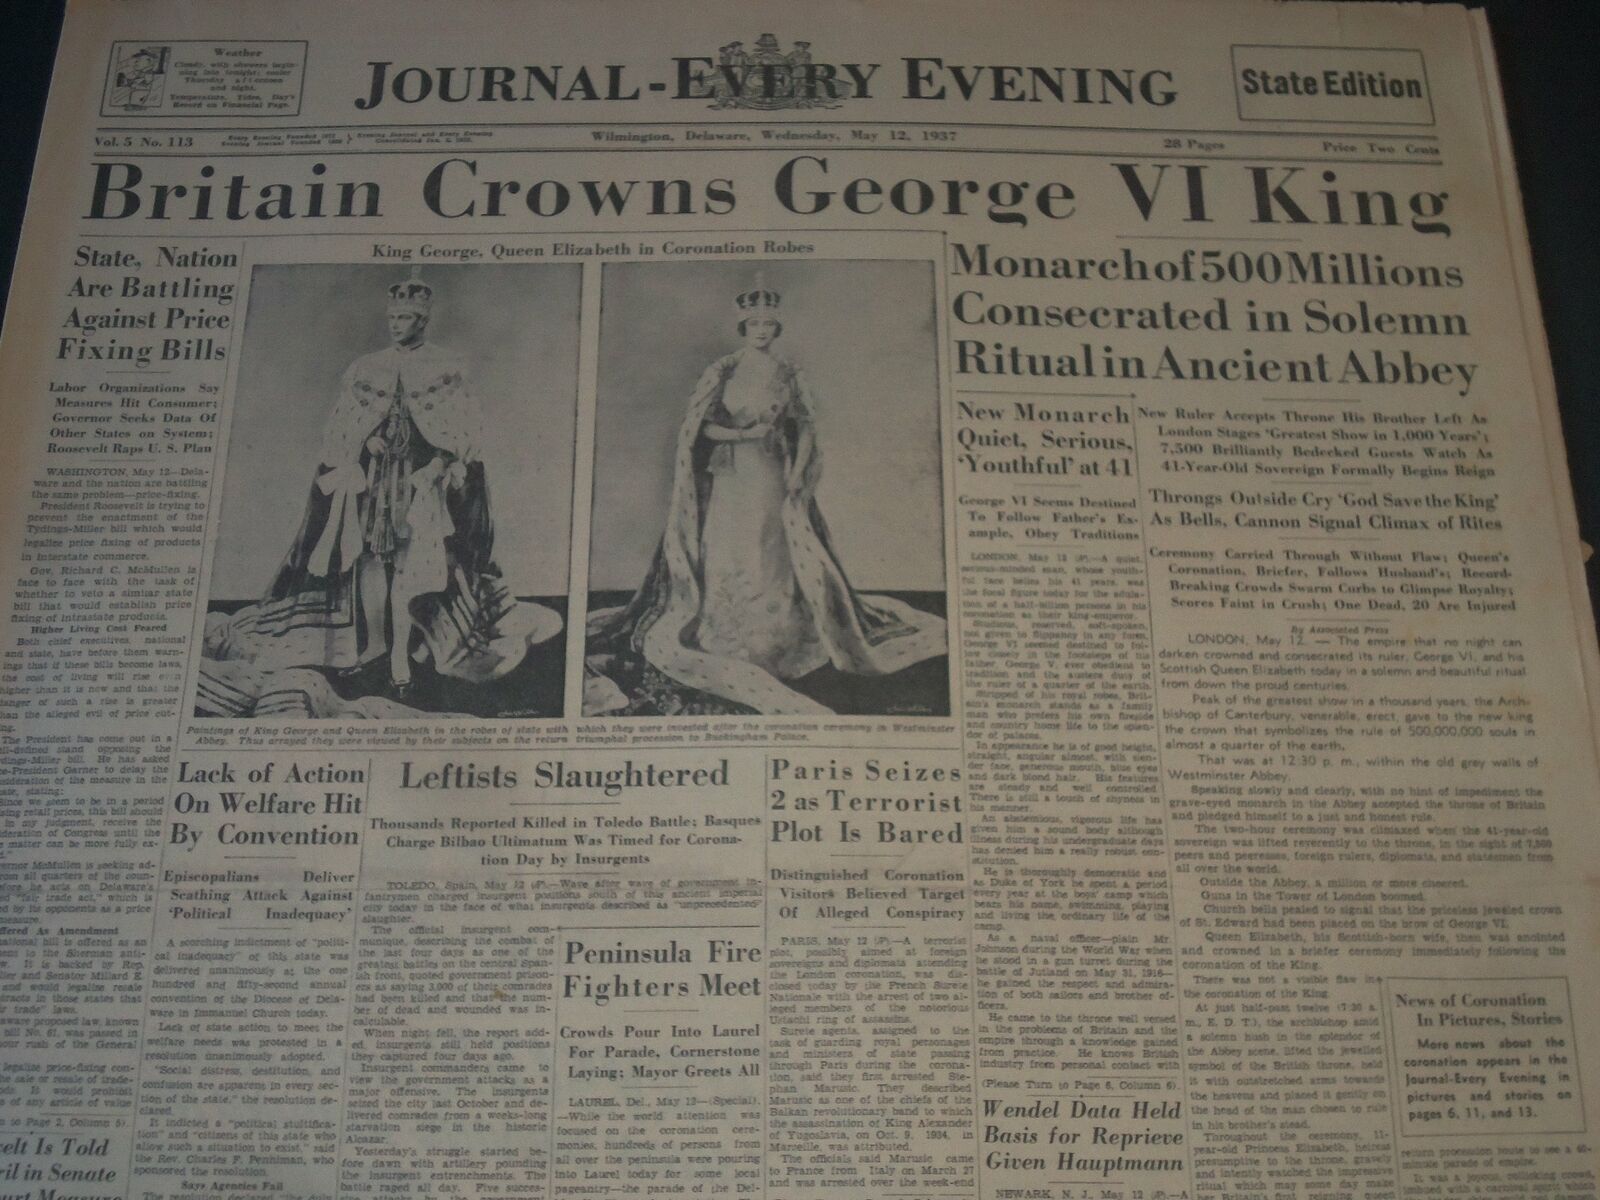 1937 MAY 12 WILMINGTON JOURNAL NEWSPAPER BRITAIN CROWNS KING GEORGE VI - NT 7294